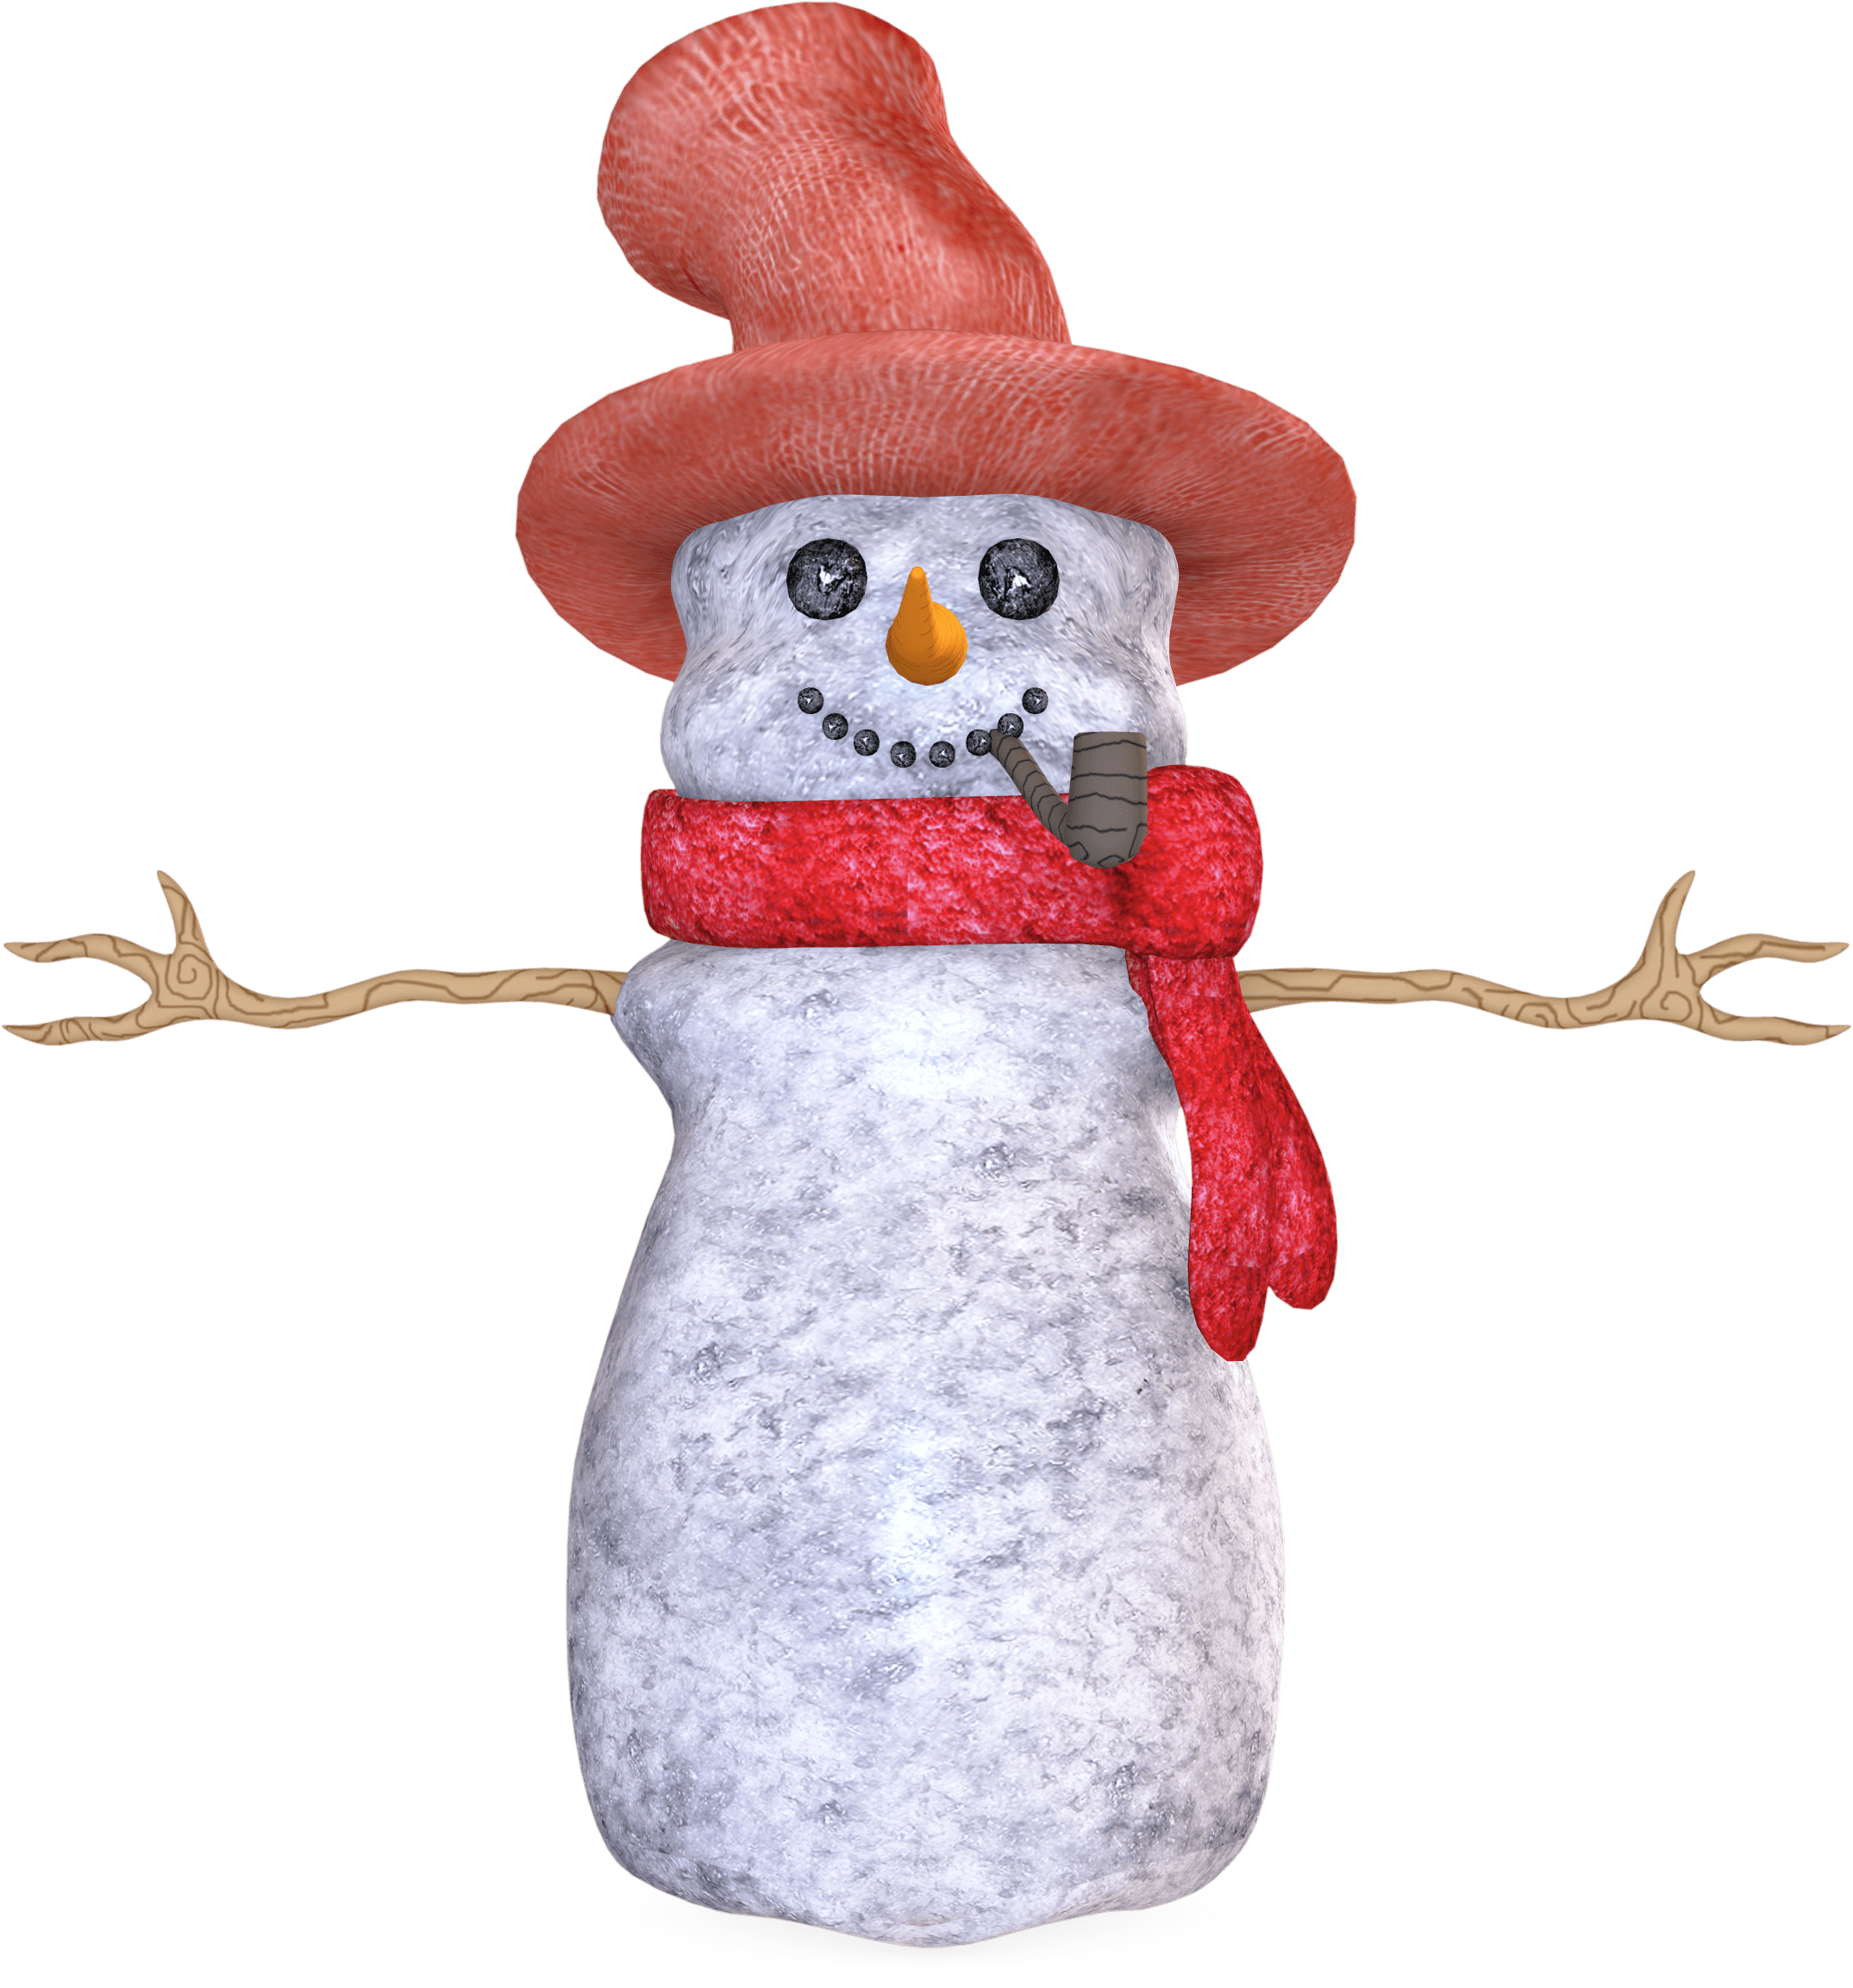 snowman clipart vintage